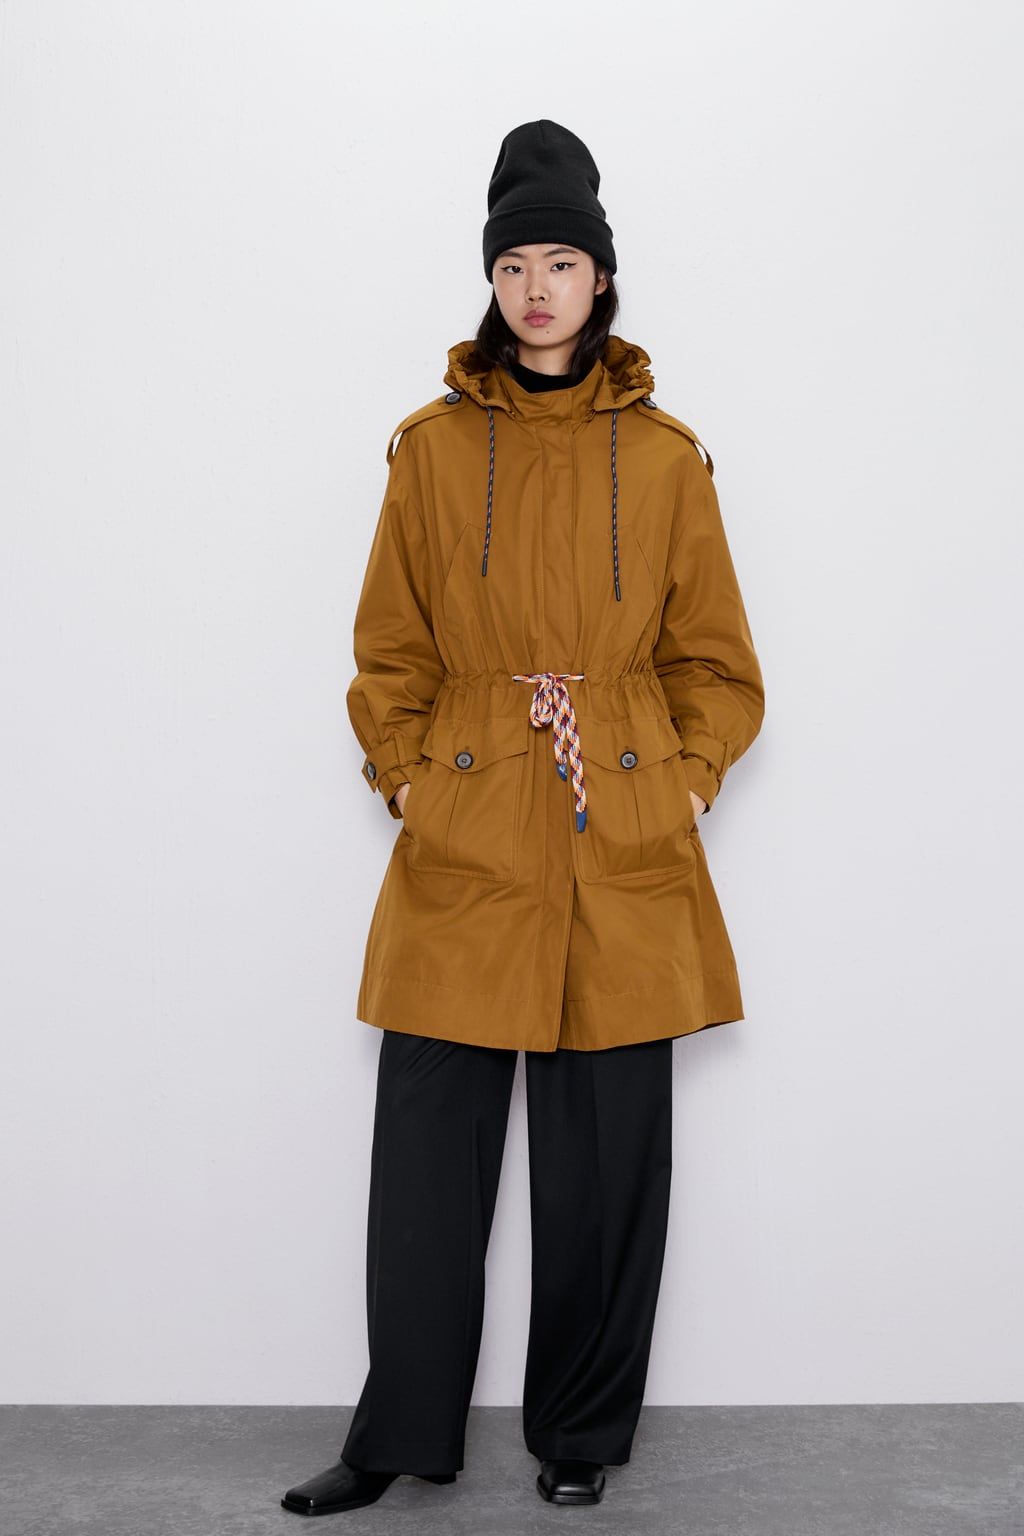 zara hooded coat with pockets